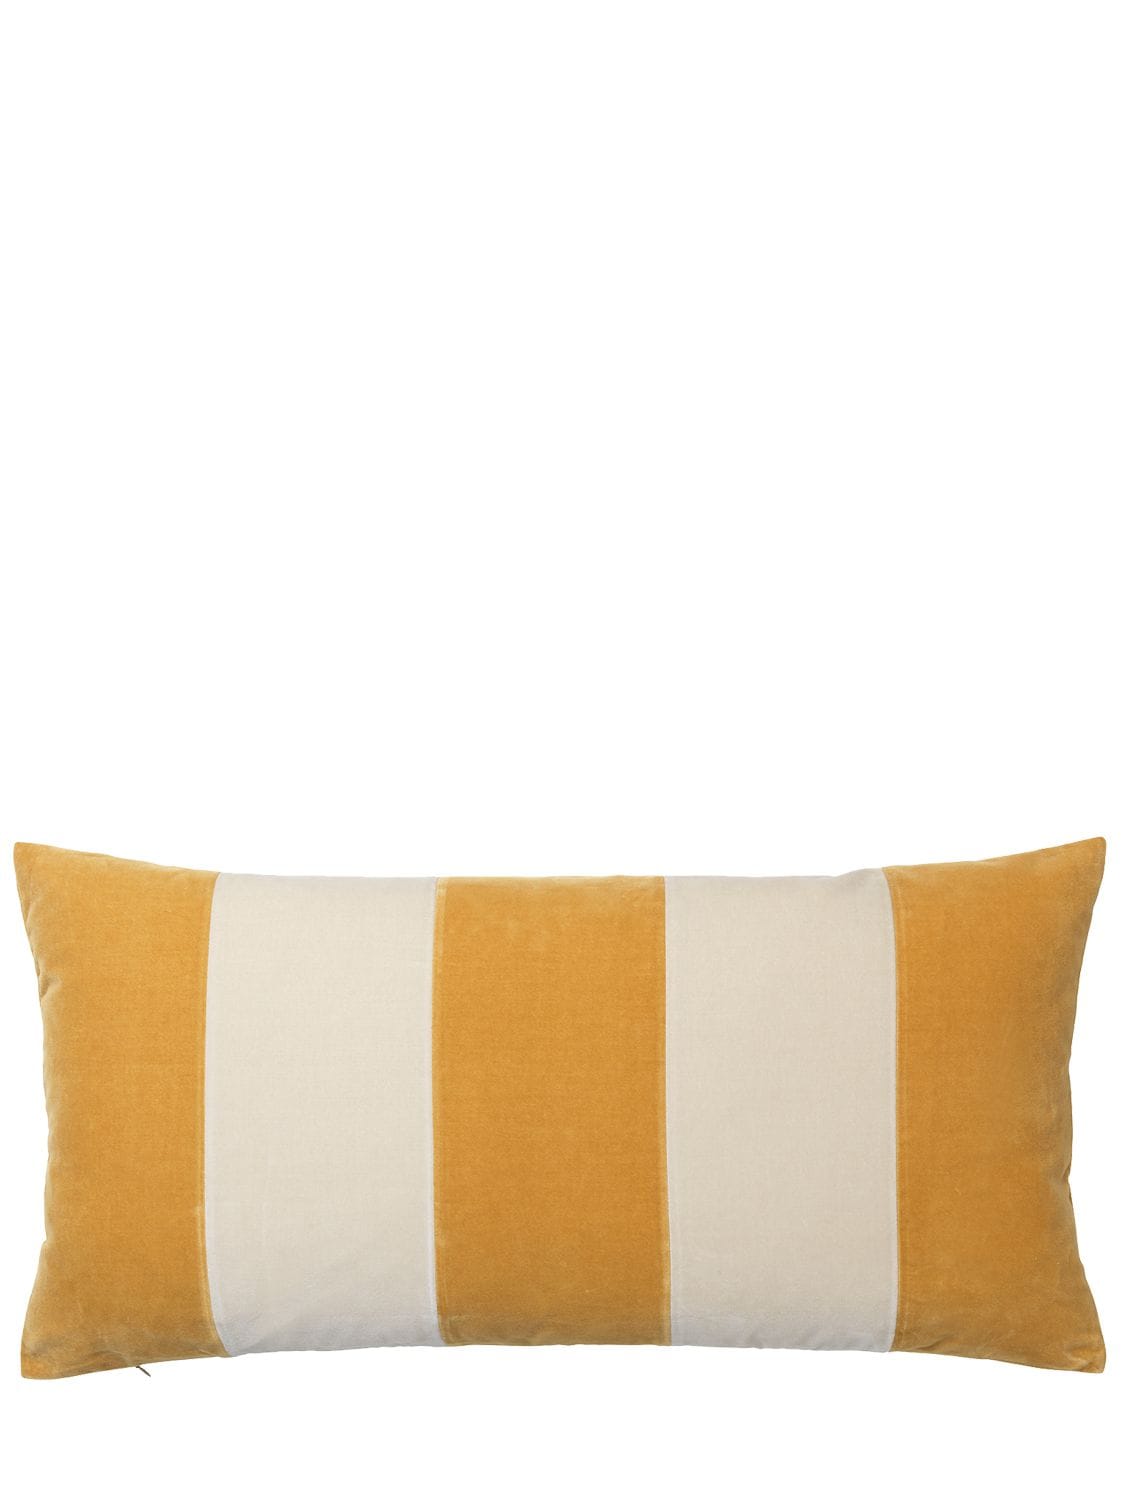 Image of Striped Velvet Cushion